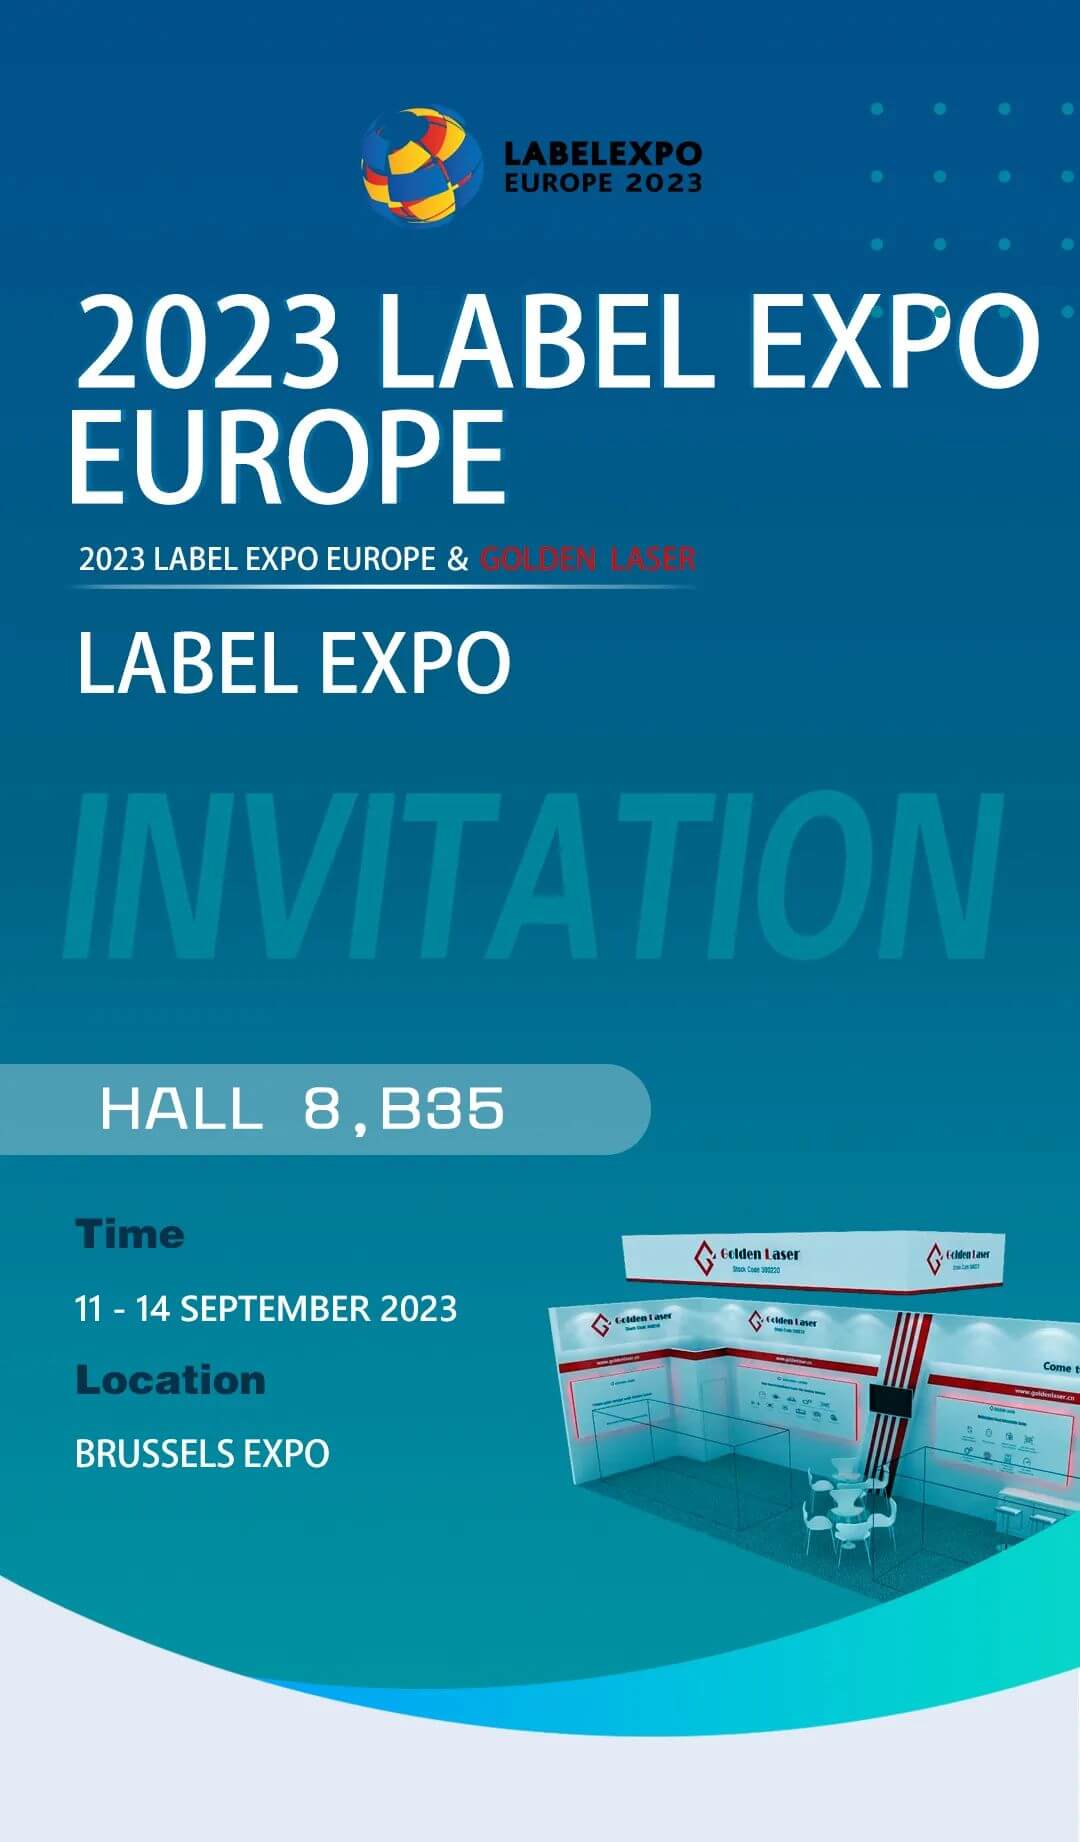 लेबलएक्सपो यूरोप 2023 गोल्डनलेजर आमंत्रण